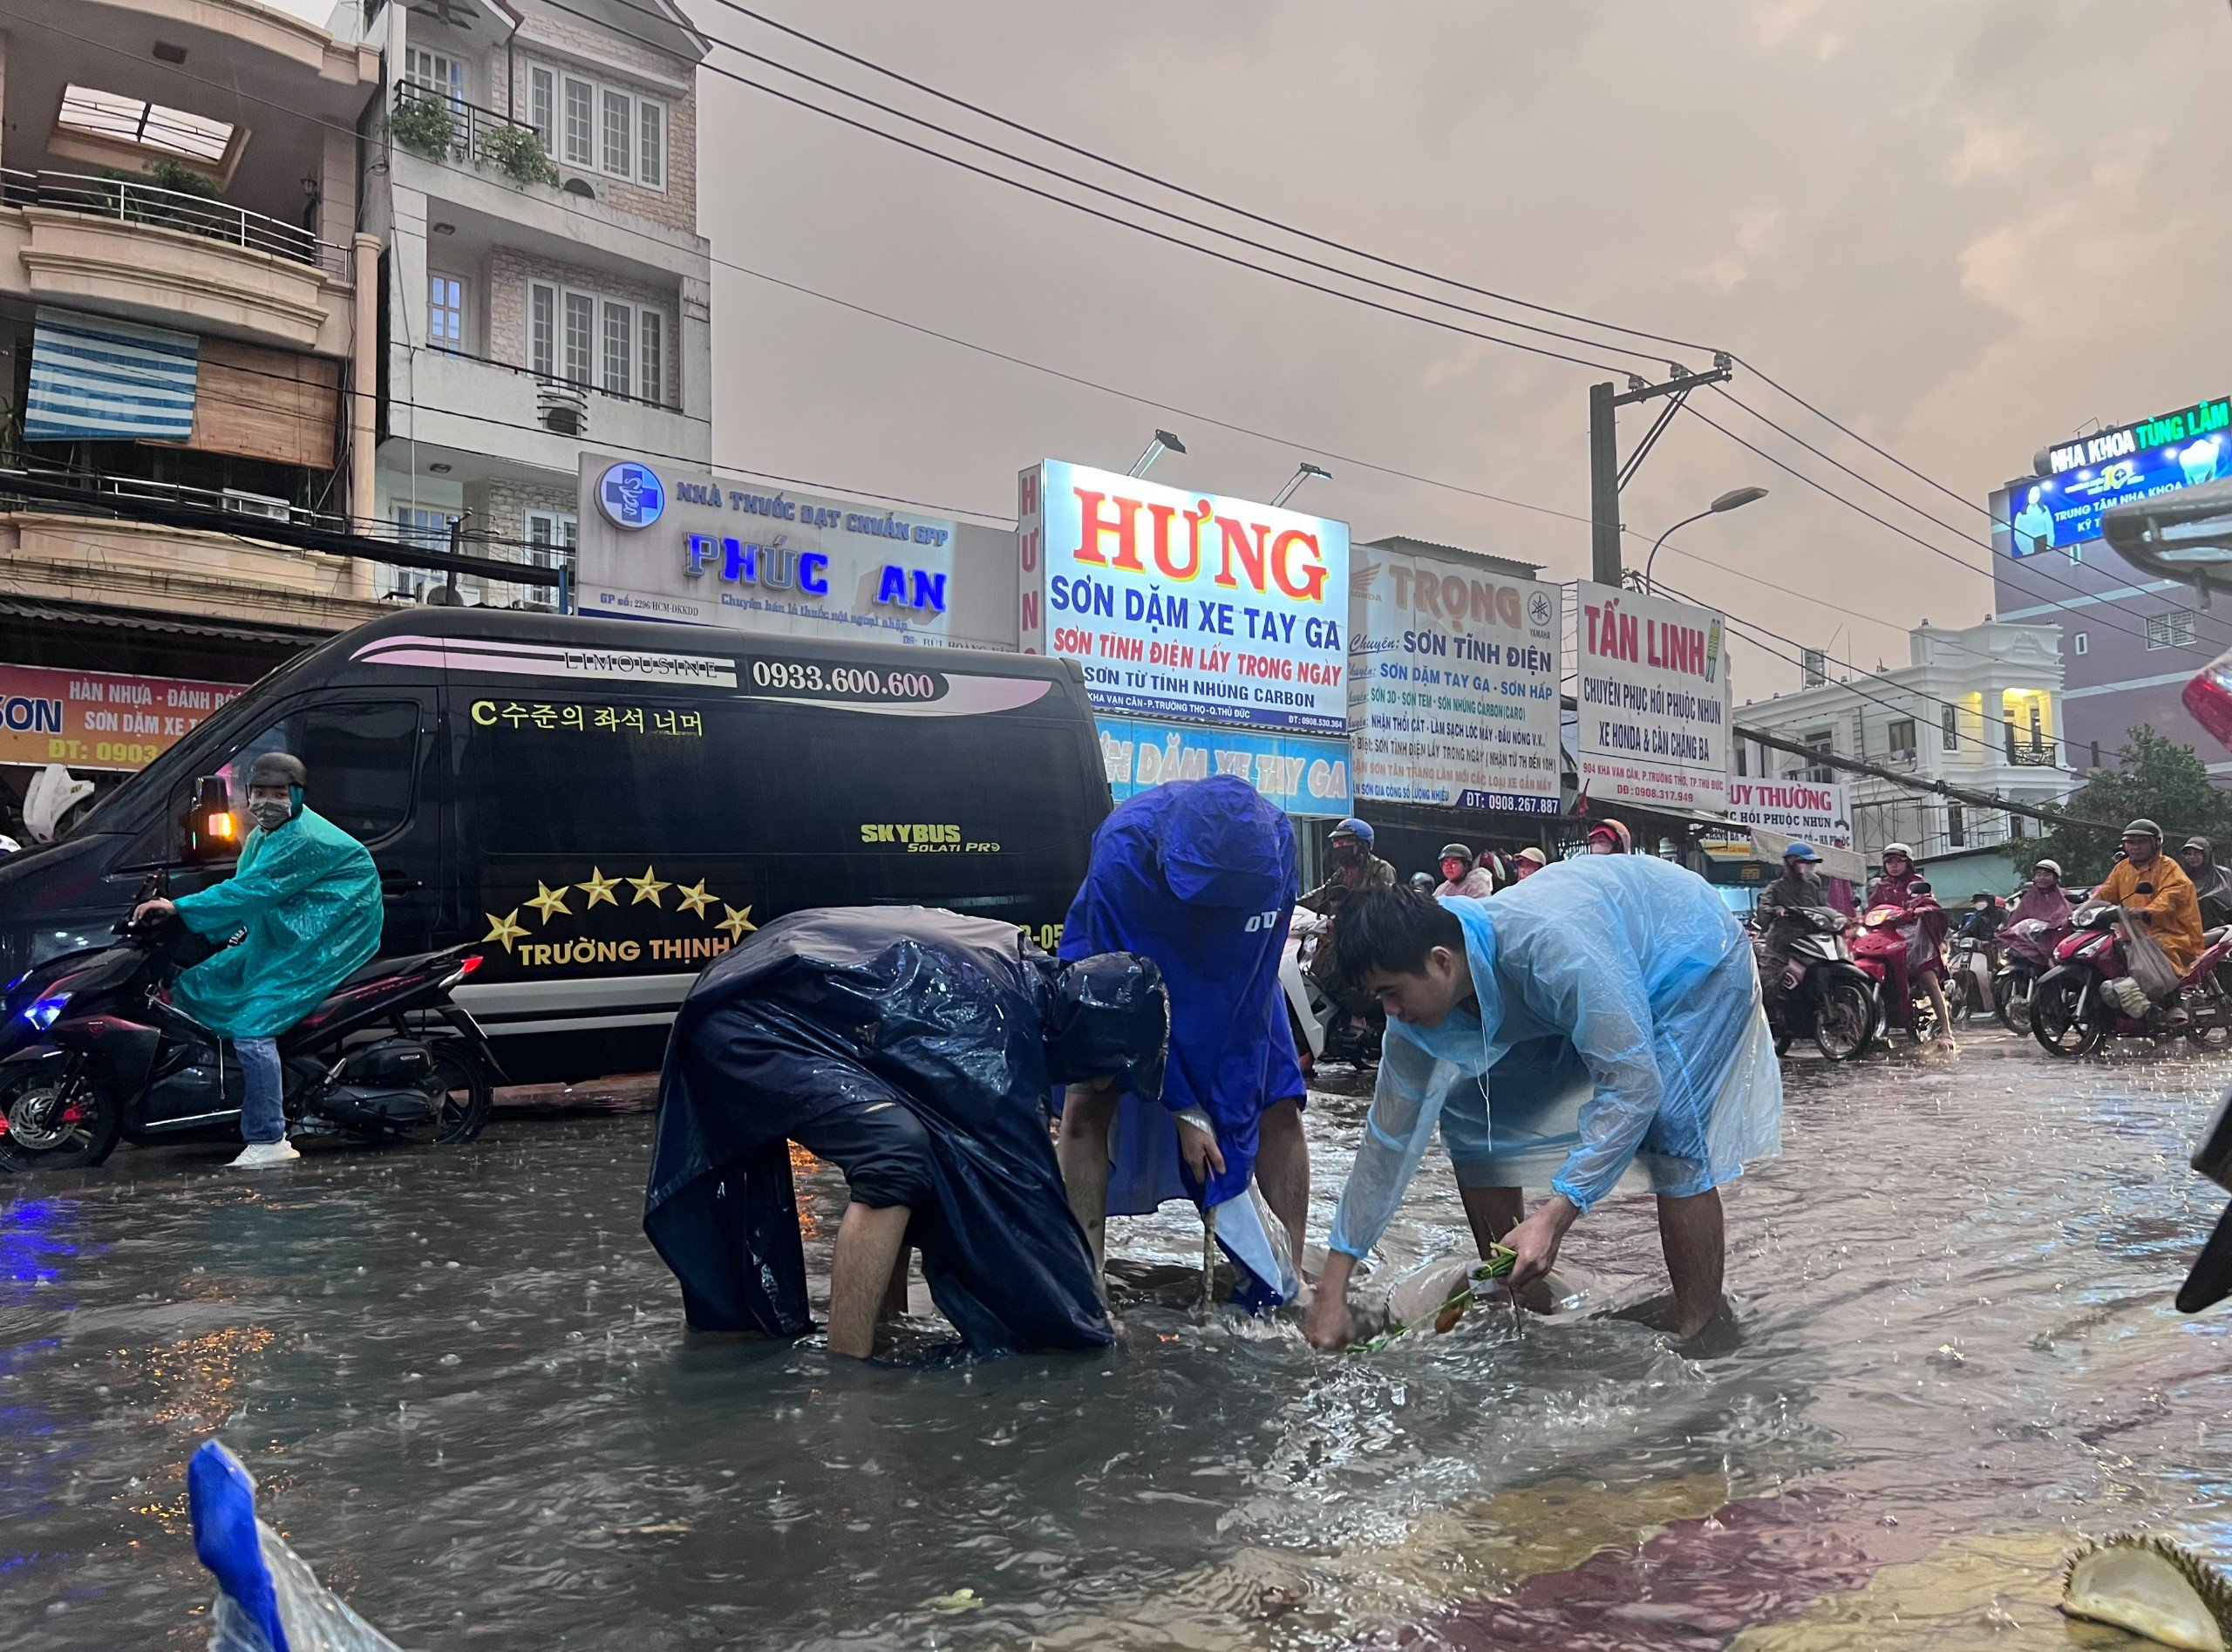 Những người dân xung quanh khu vực chợ Thủ Đức đội mưa dọn rác làm tắc nghẽn cống